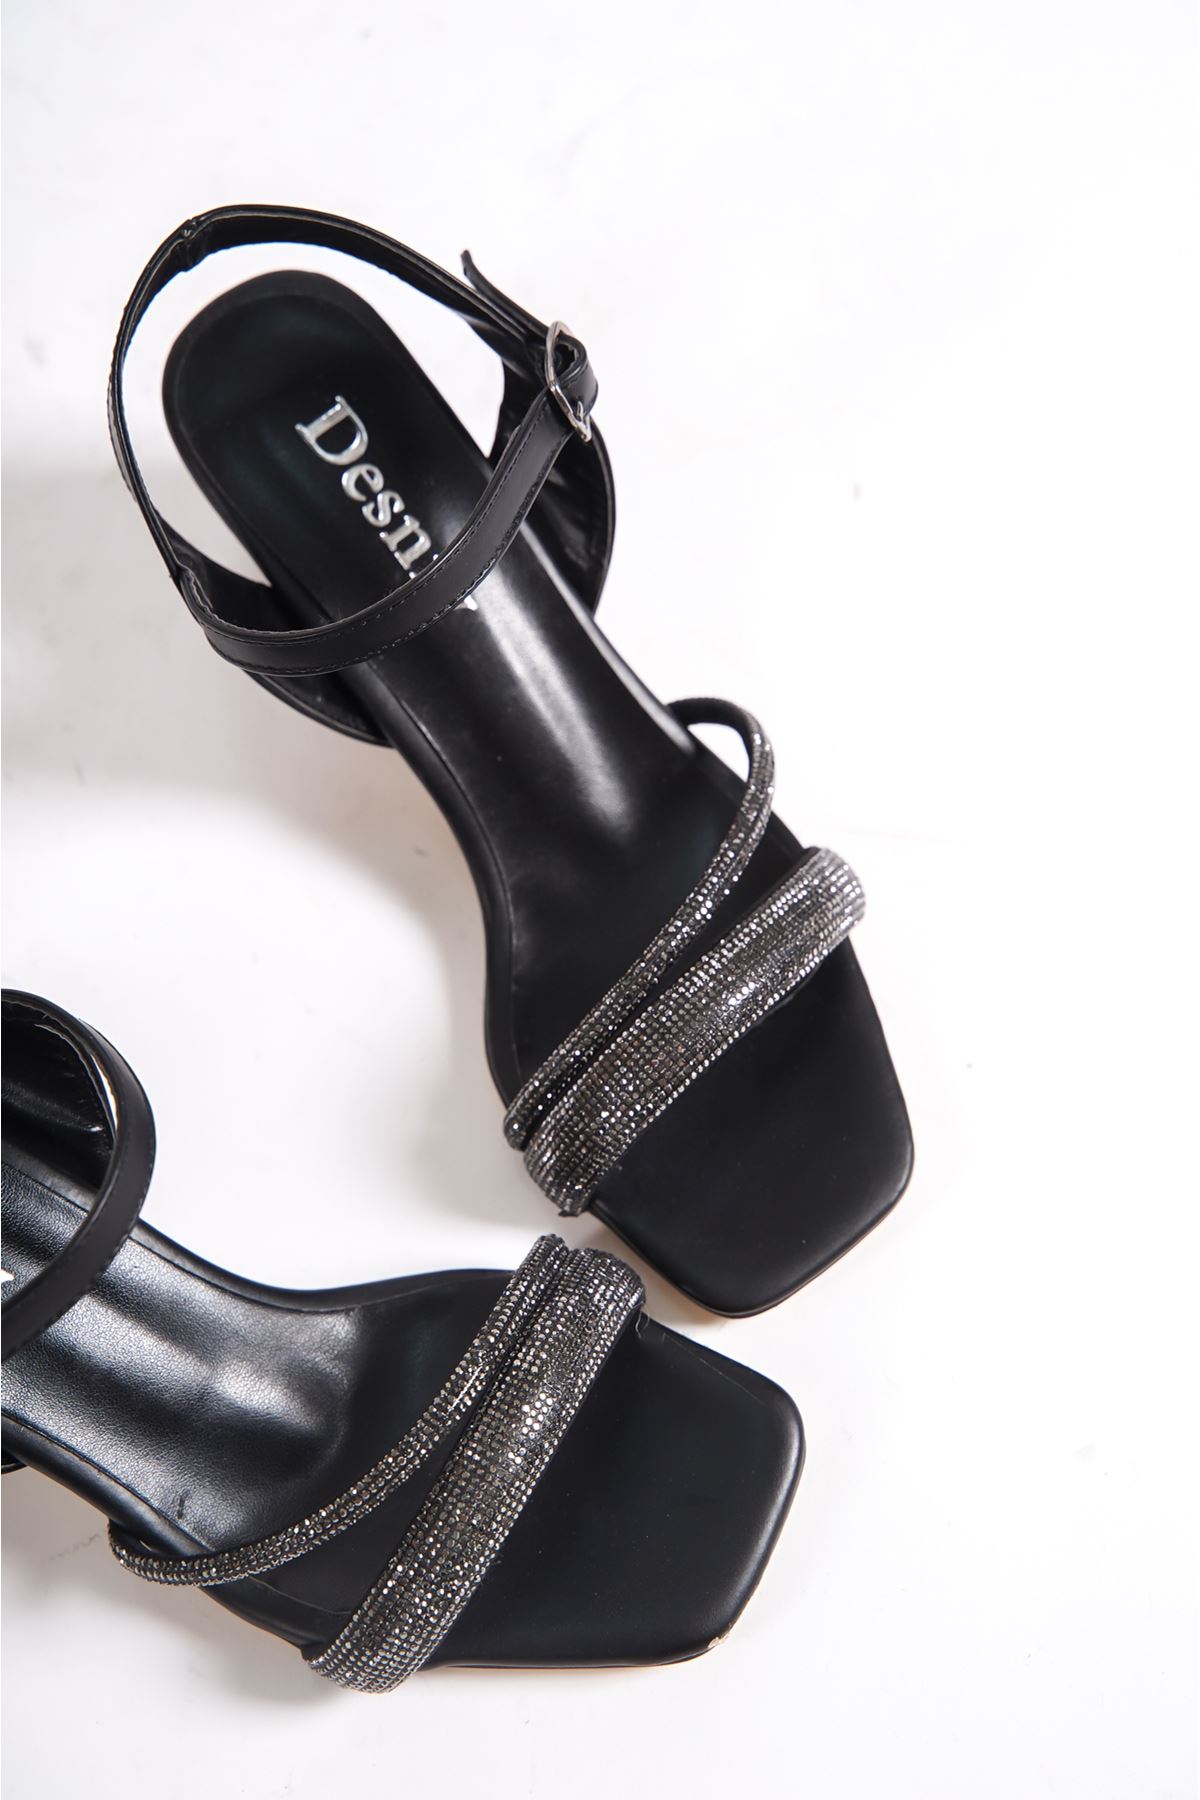 Desire Siyah Taşlı Kadın Topuklu Ayakkabı